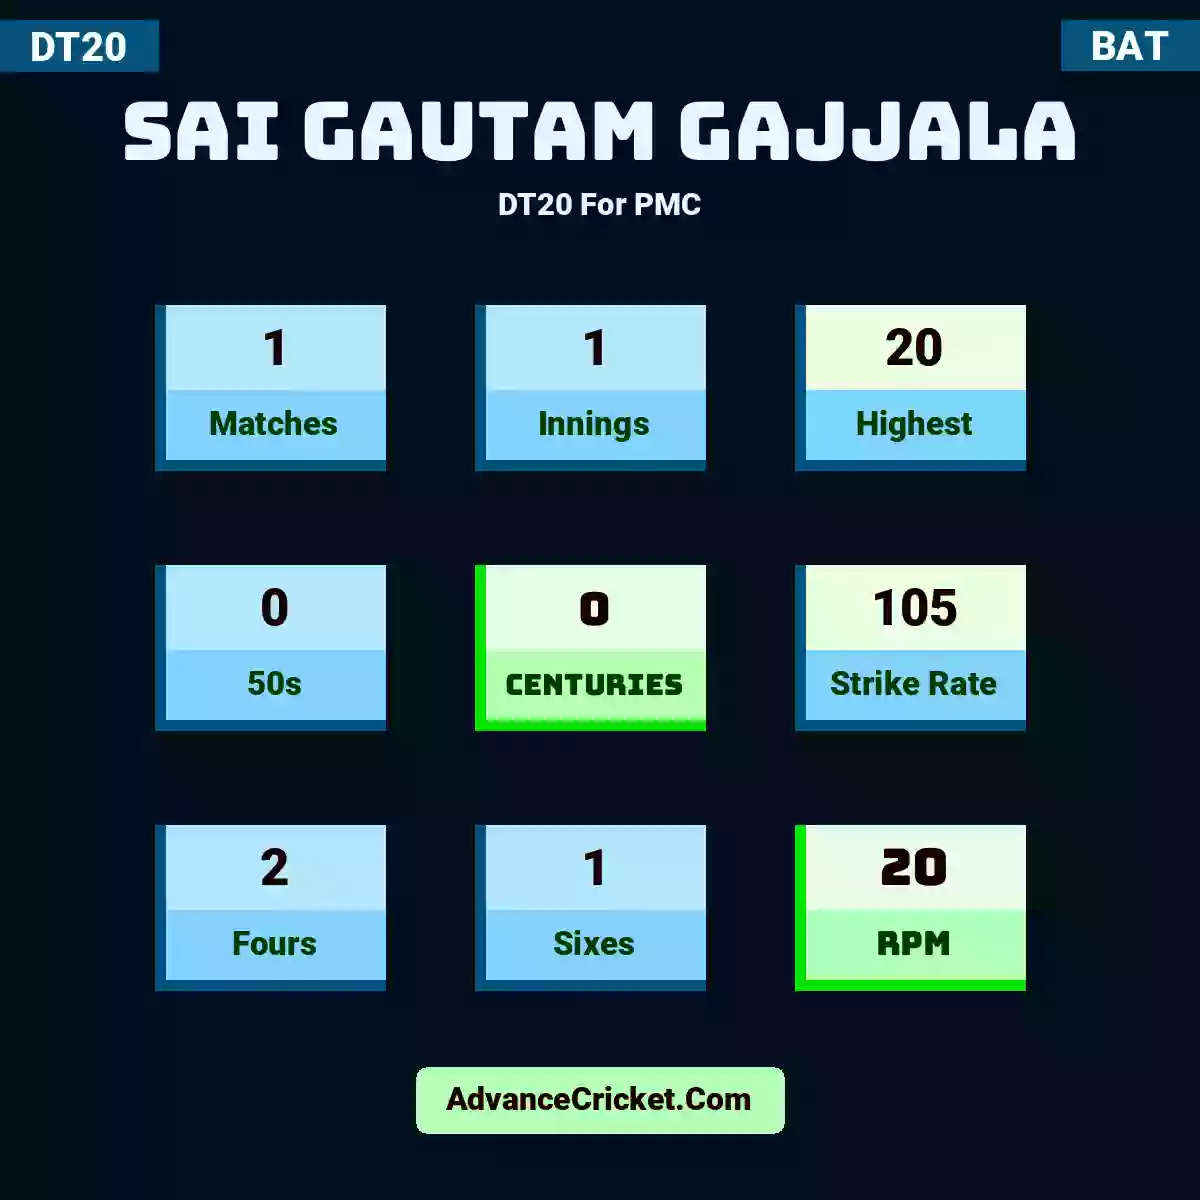 Sai Gautam Gajjala DT20  For PMC, Sai Gautam Gajjala played 1 matches, scored 20 runs as highest, 0 half-centuries, and 0 centuries, with a strike rate of 105. S.Gautam.Gajjala hit 2 fours and 1 sixes, with an RPM of 20.